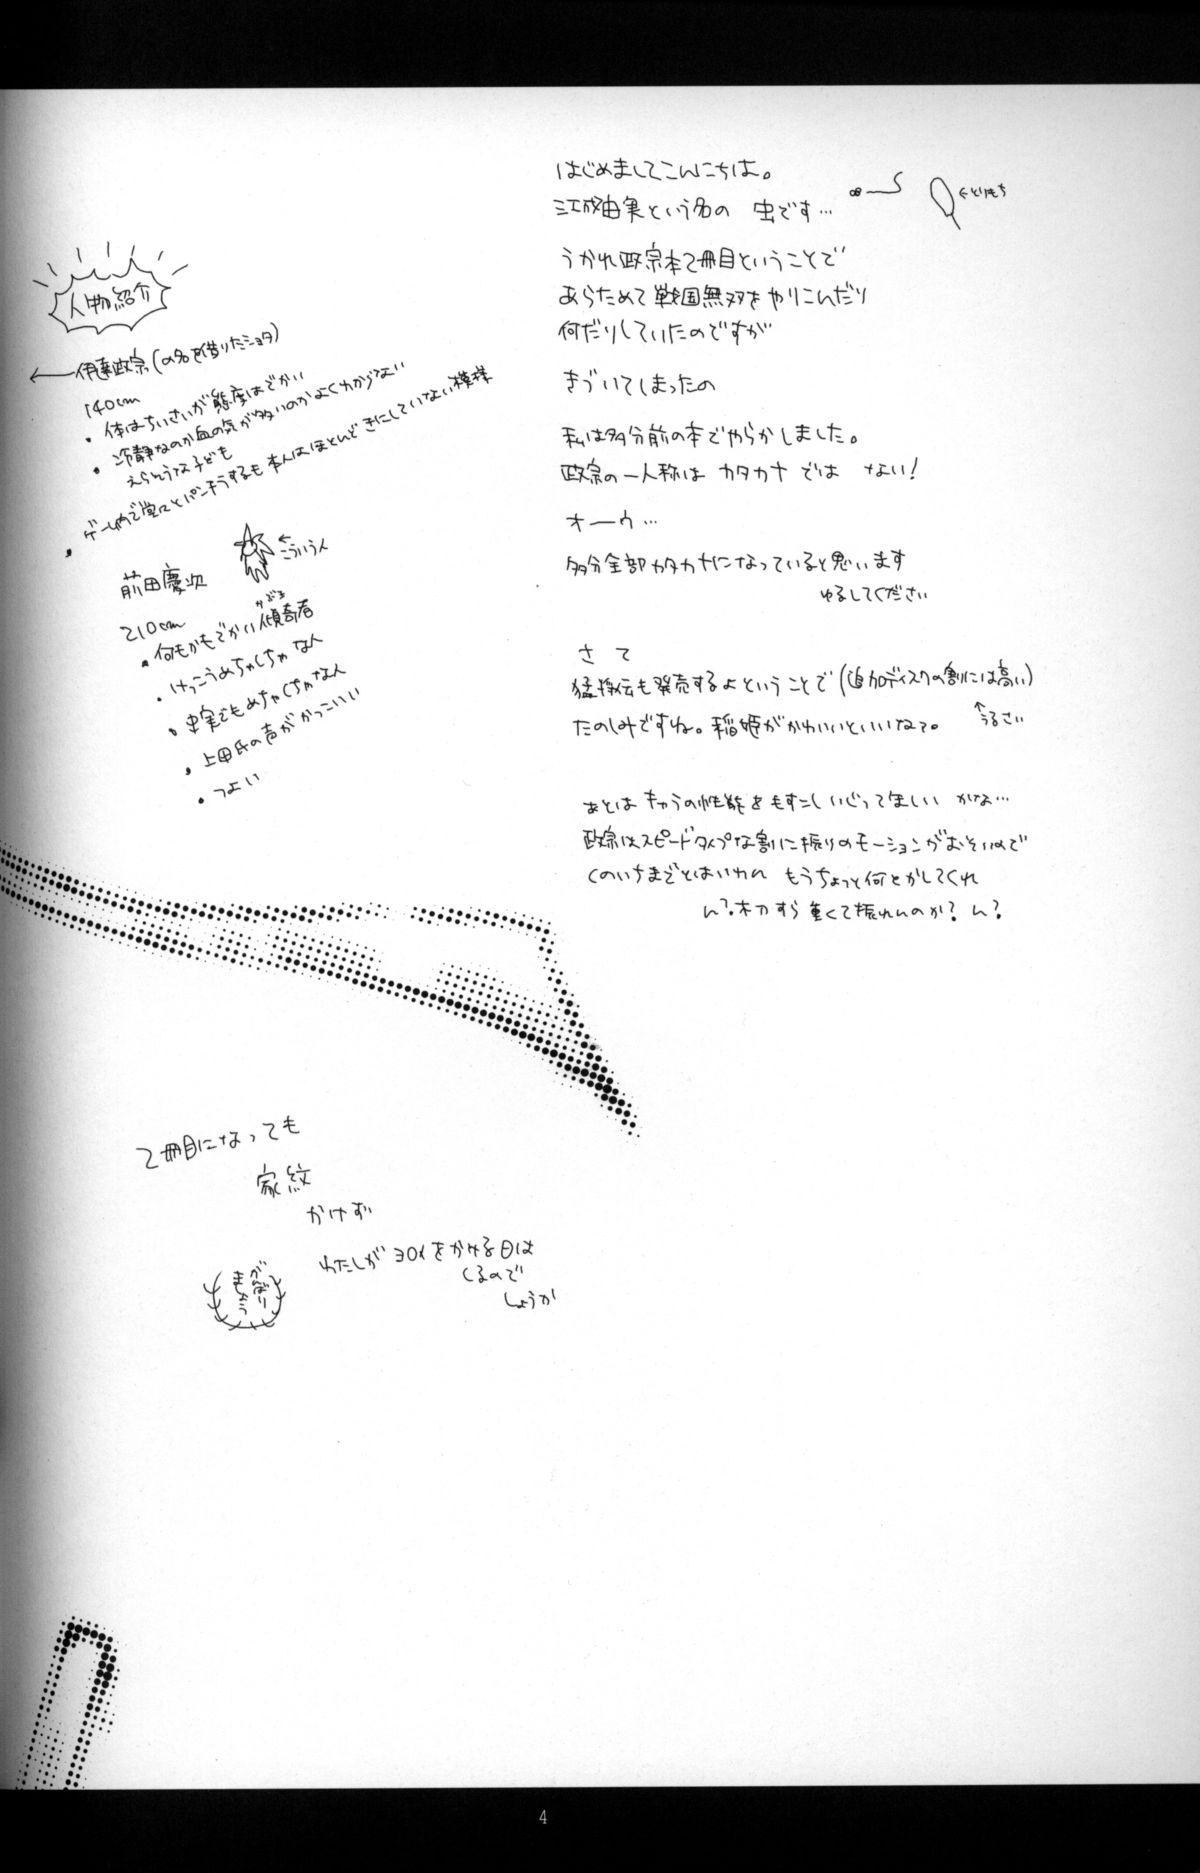 Adolescente Cube - Ten no Hibana Goldenshower - Page 3